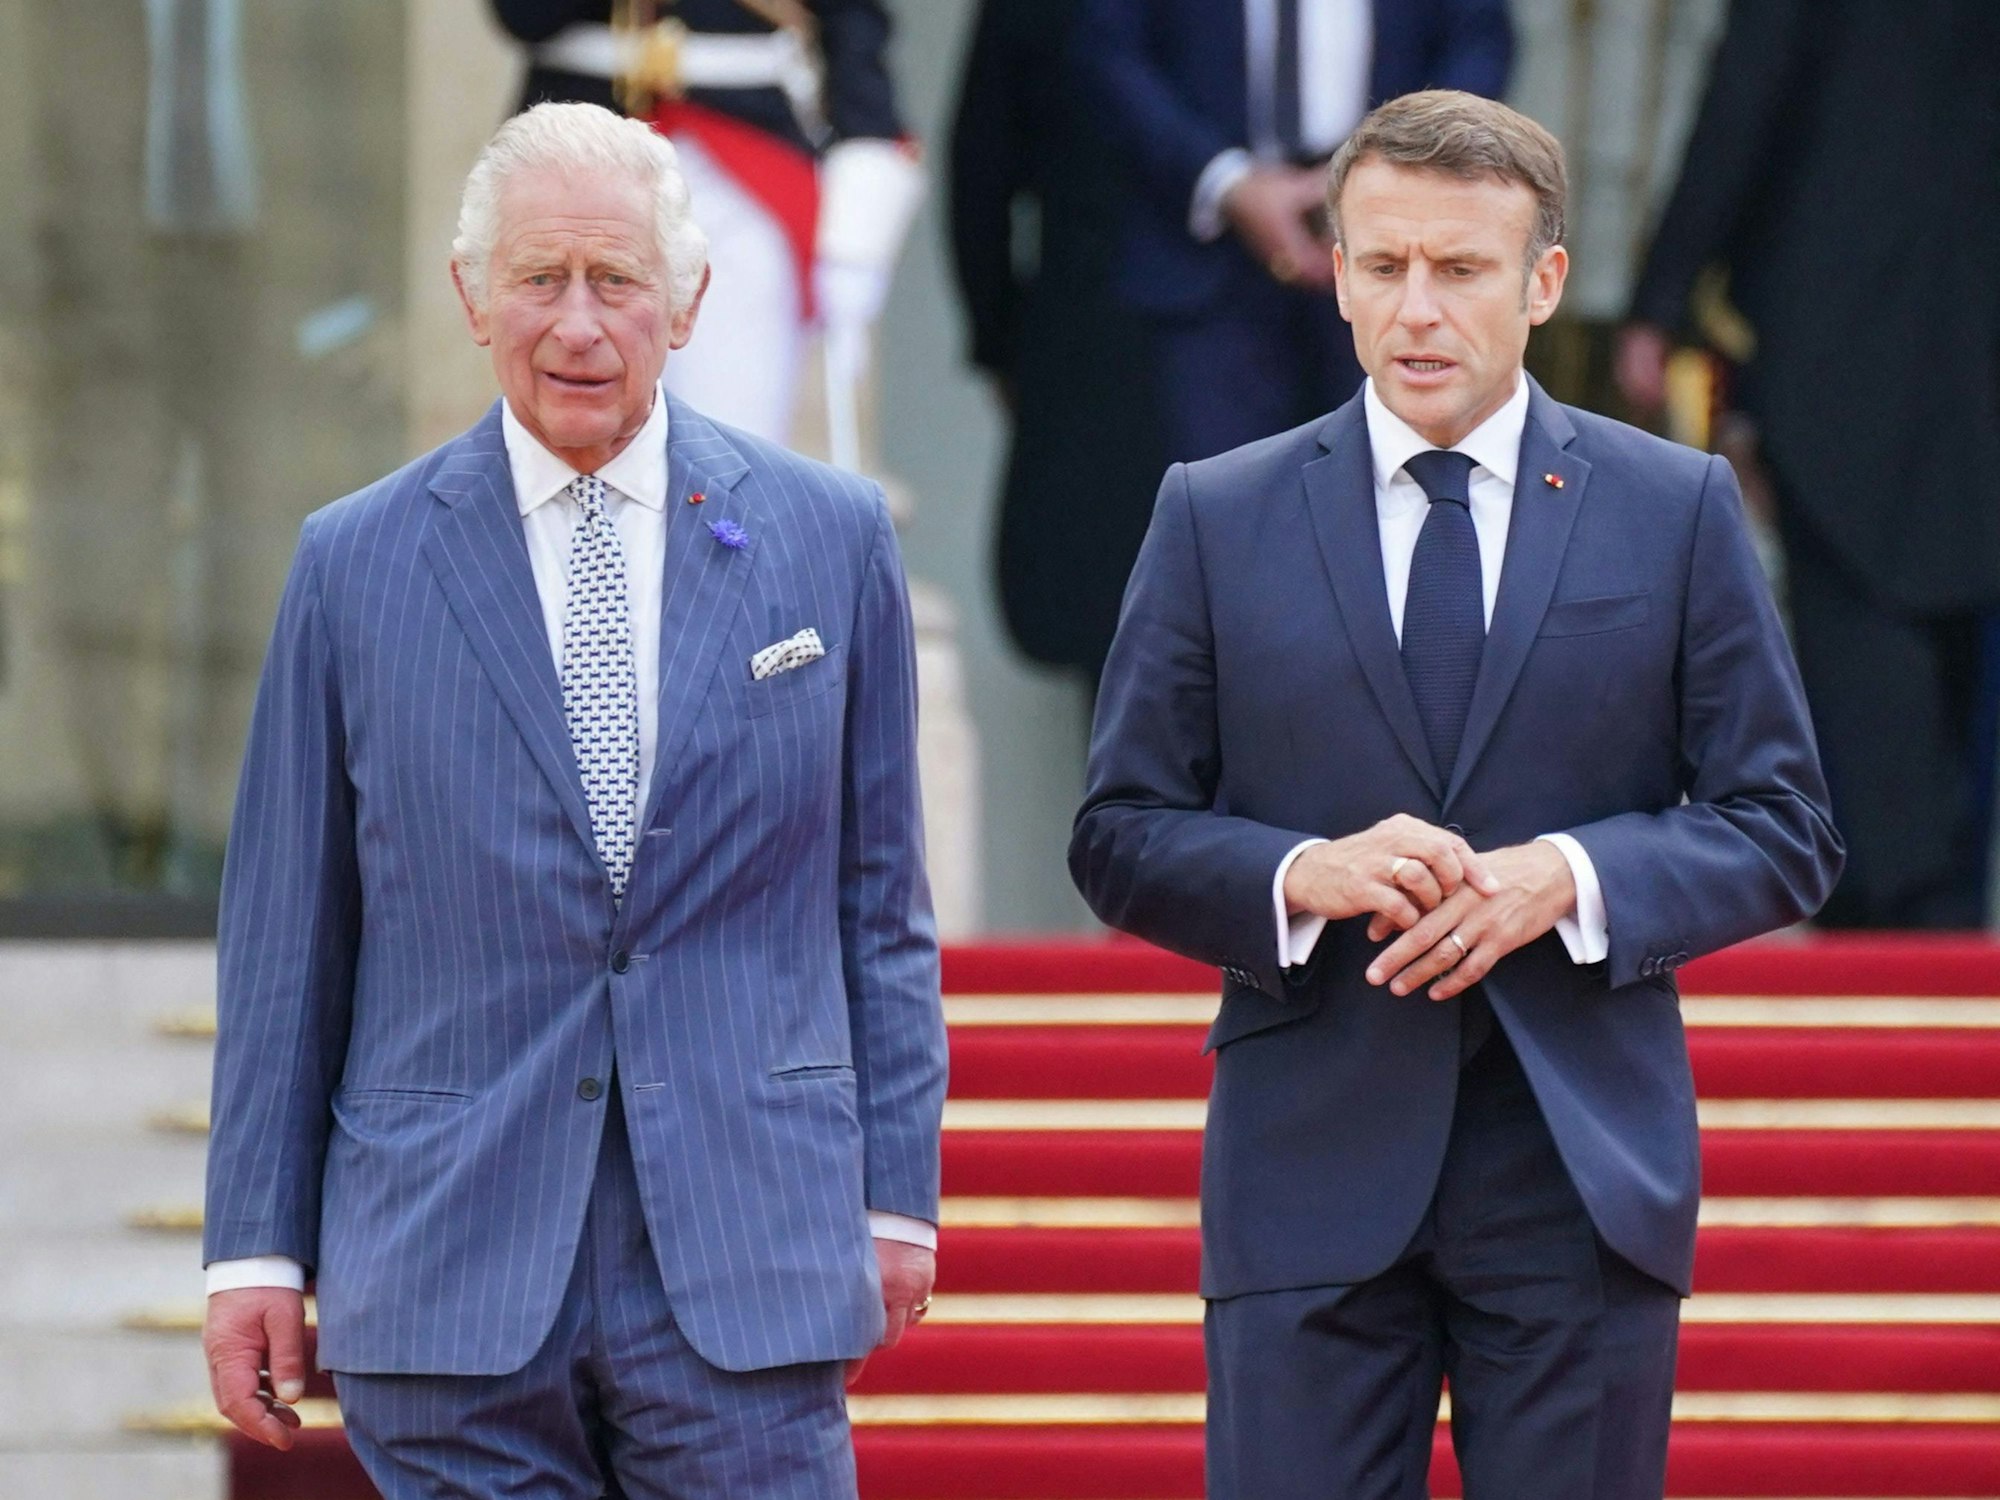 Staatsbesuch in Frankreich: König Charles III. trifft sich mit Präsident Emmanuel Macron.